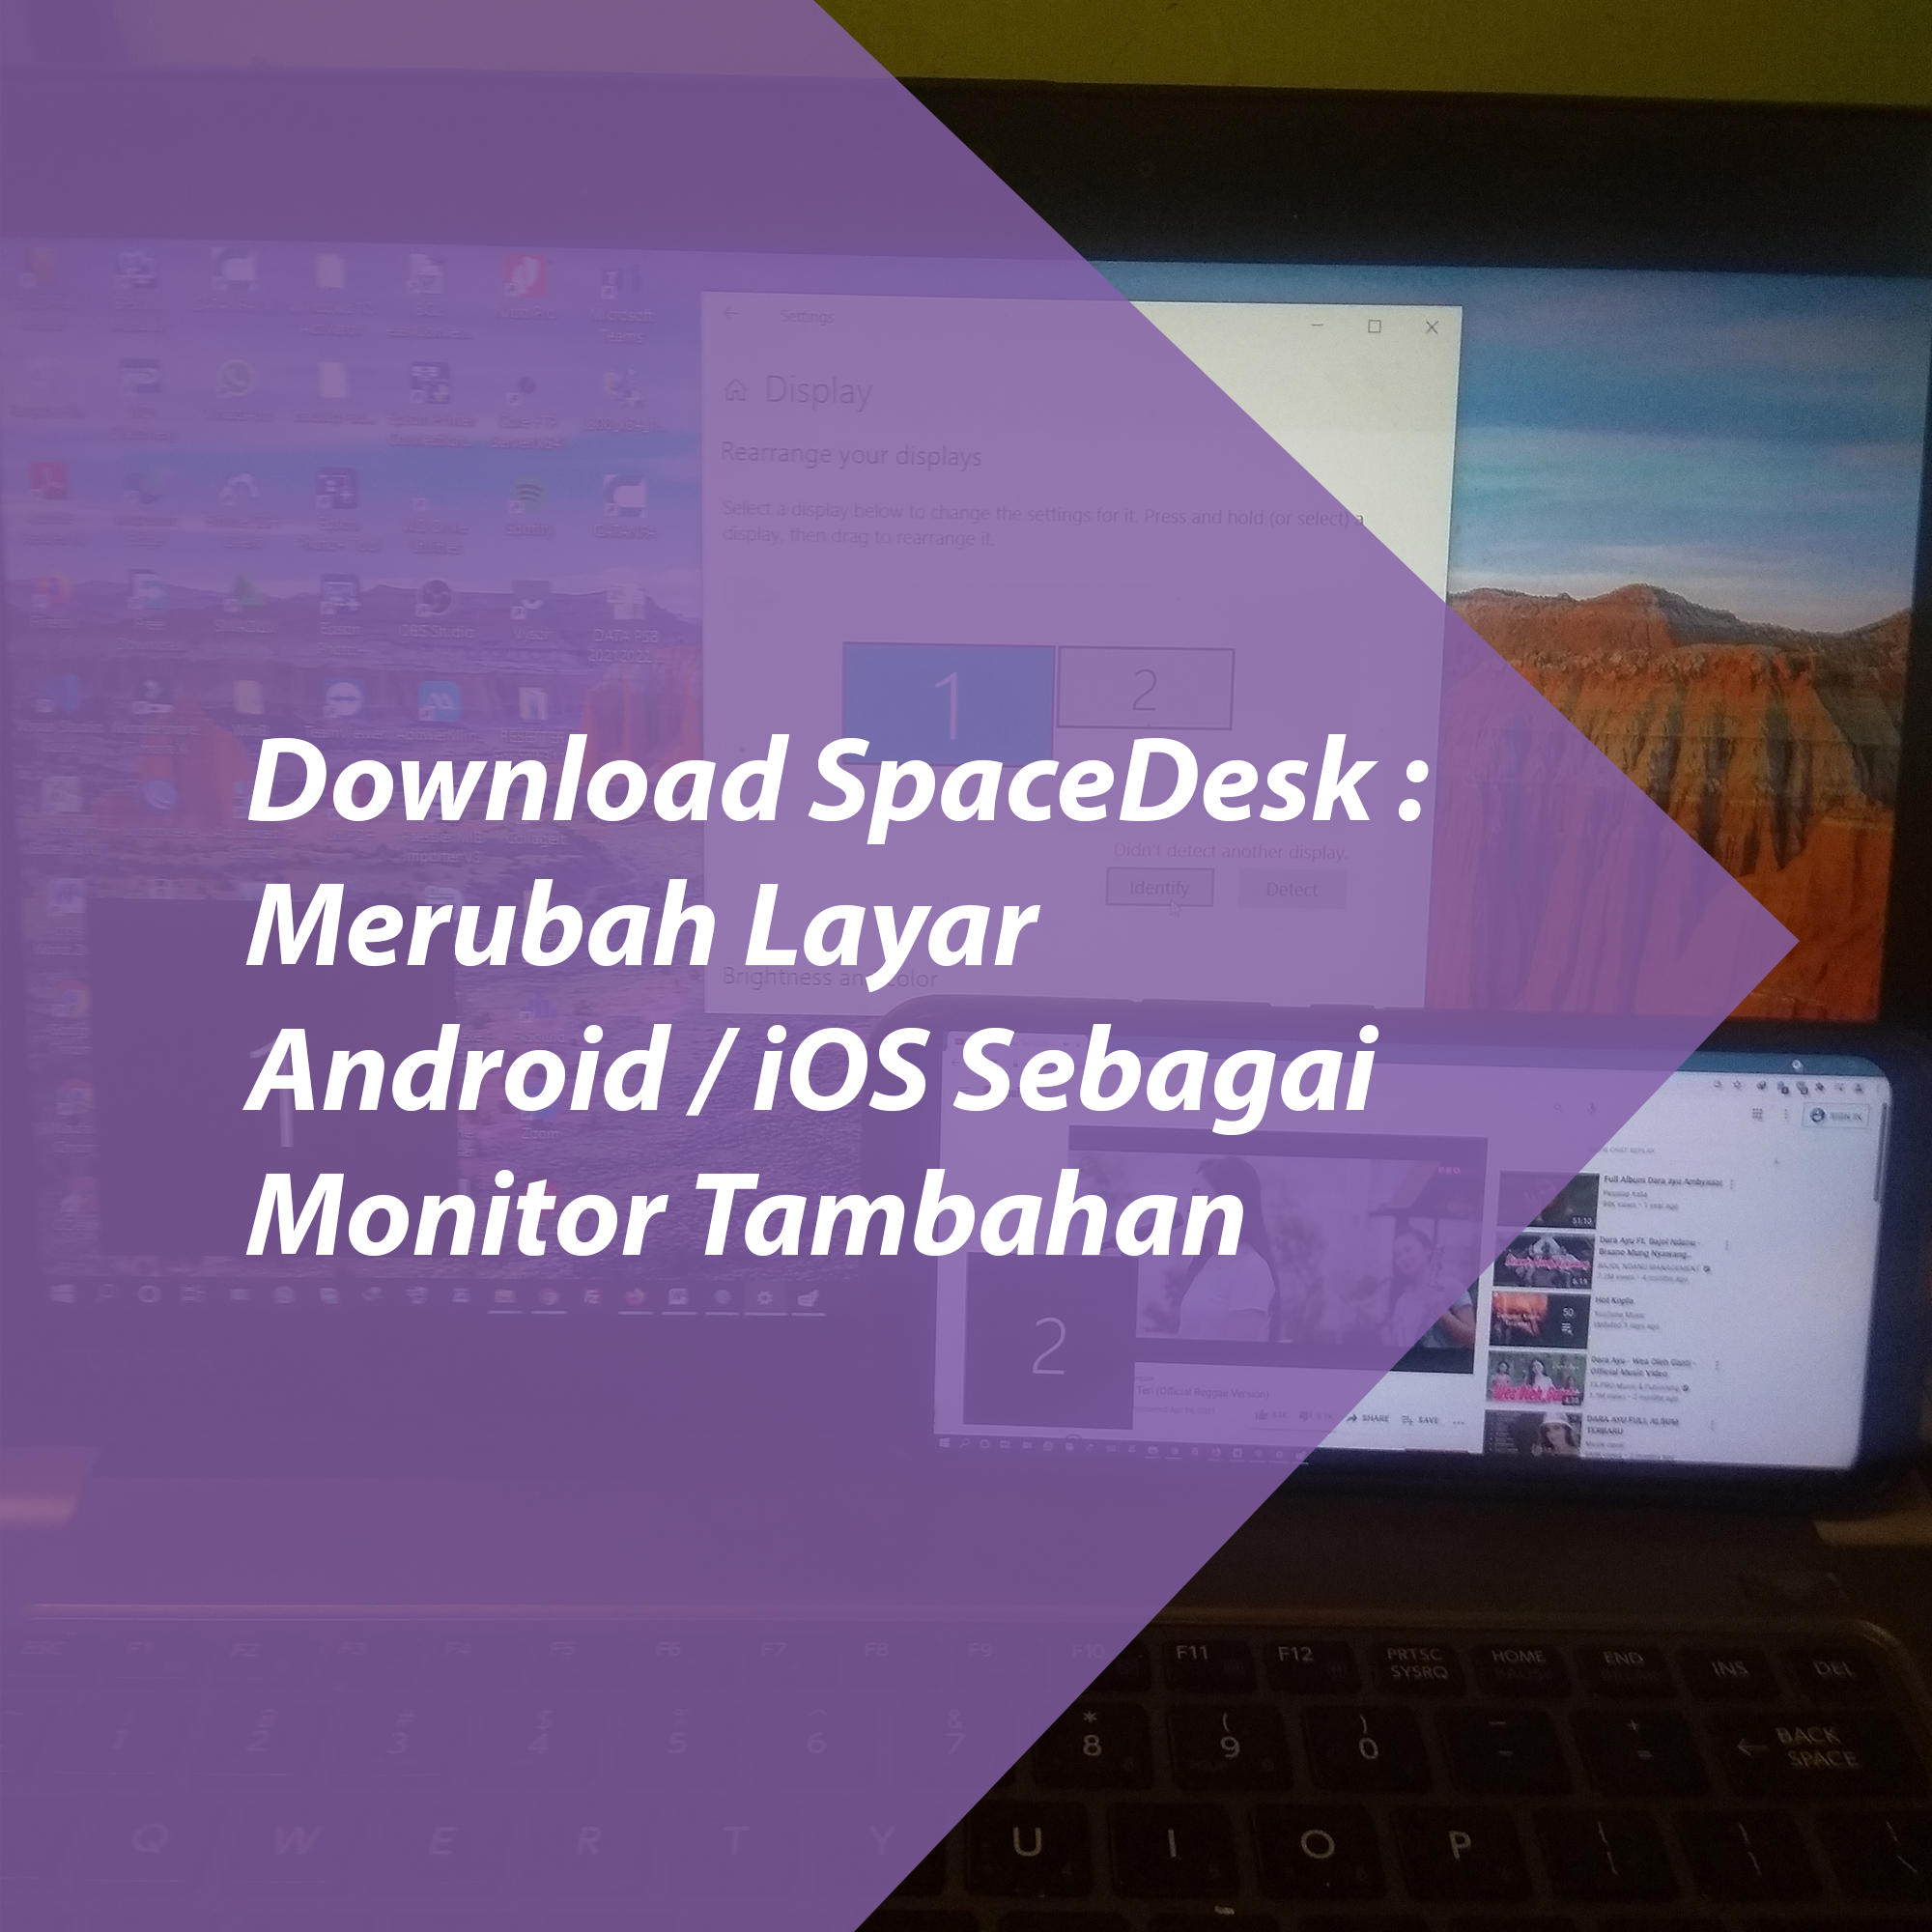 Download-SpaceDesk-Merubah-Layar-Android-iOS-Sebagai-Monitor-Tambahan